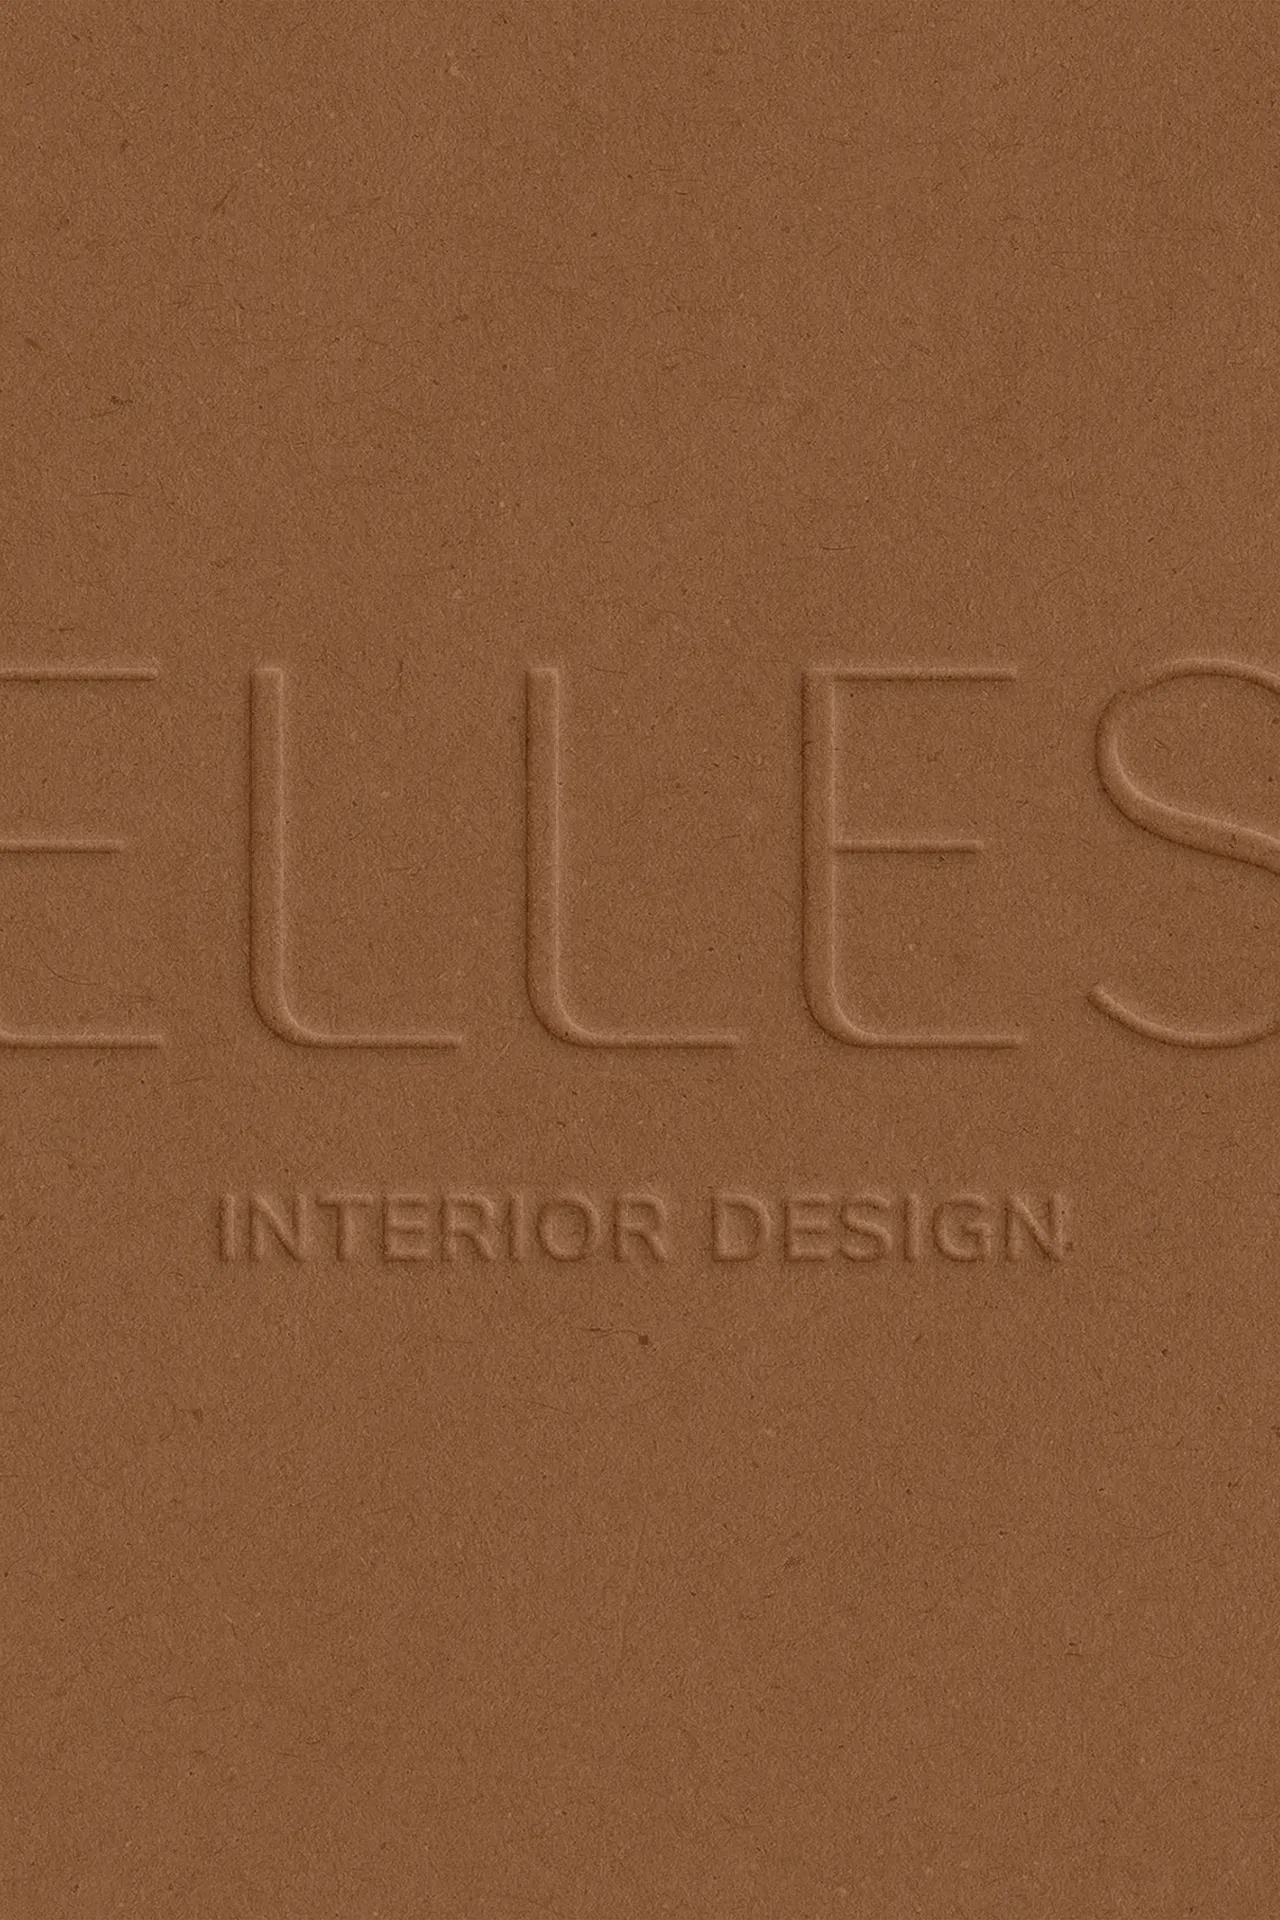 Logo interior design femminile marrone